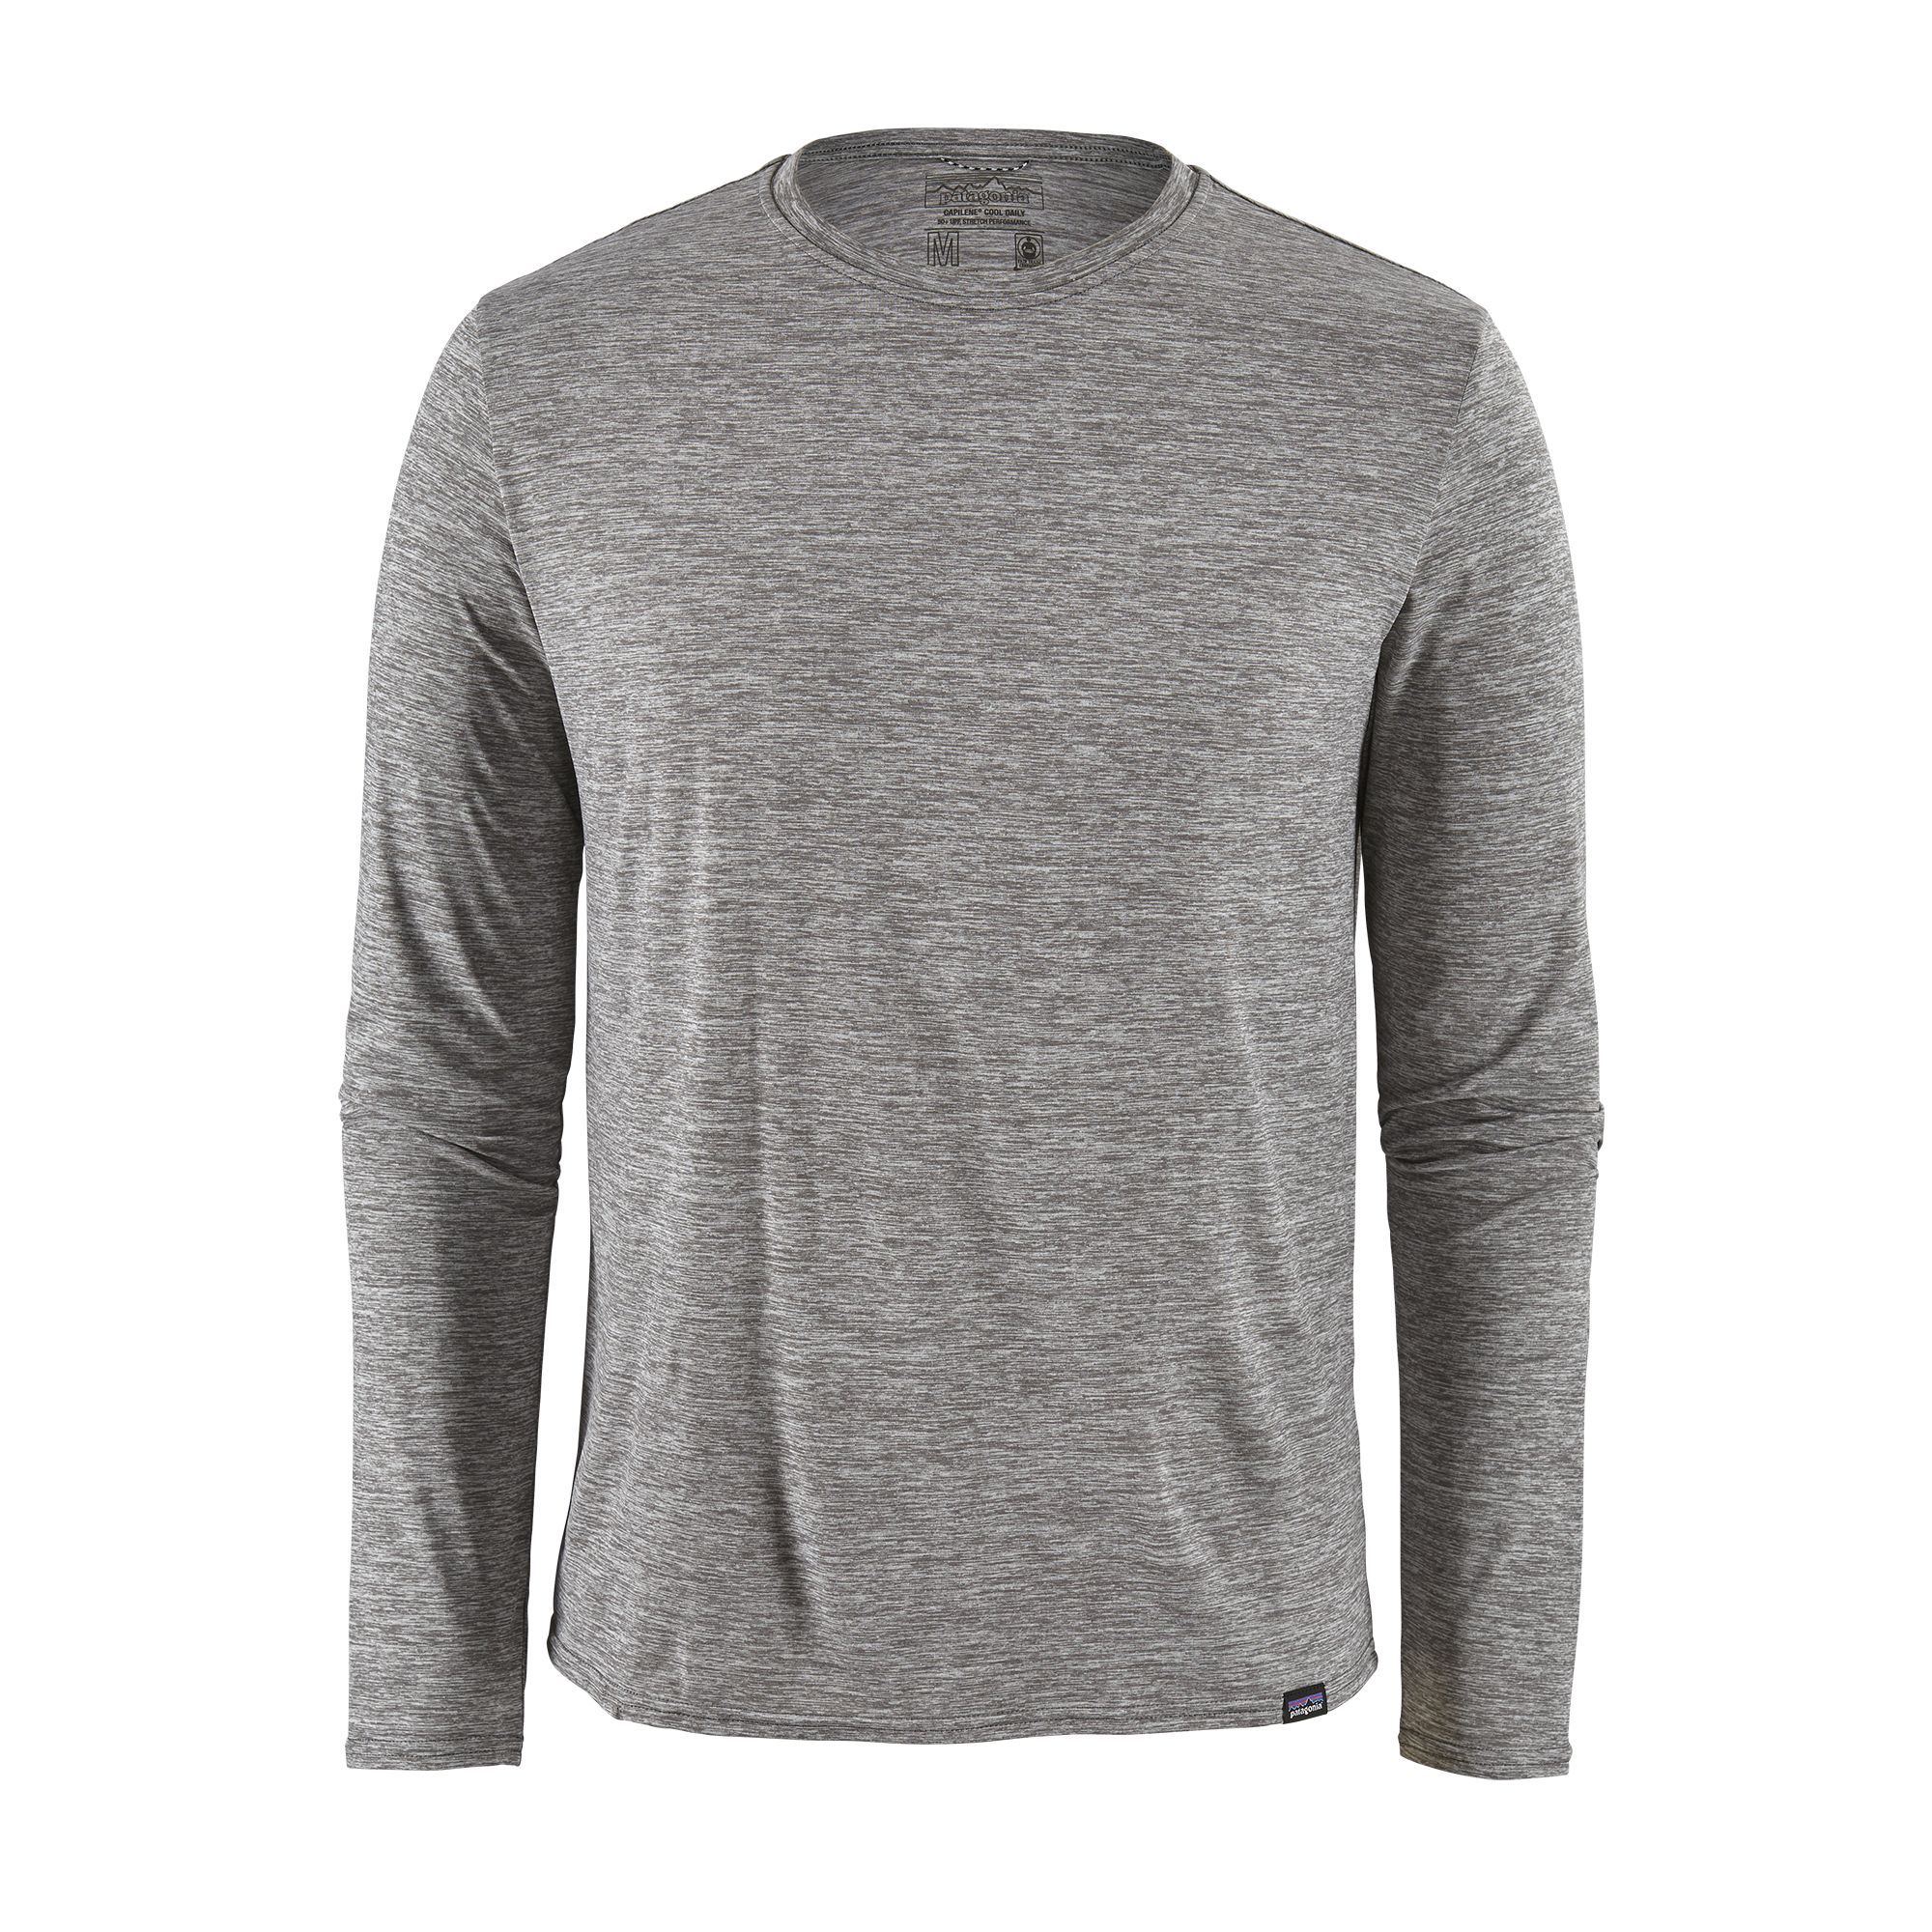 T-shirt Men's Long-Sleeved Capilene Cool Daily Shirt - Gris